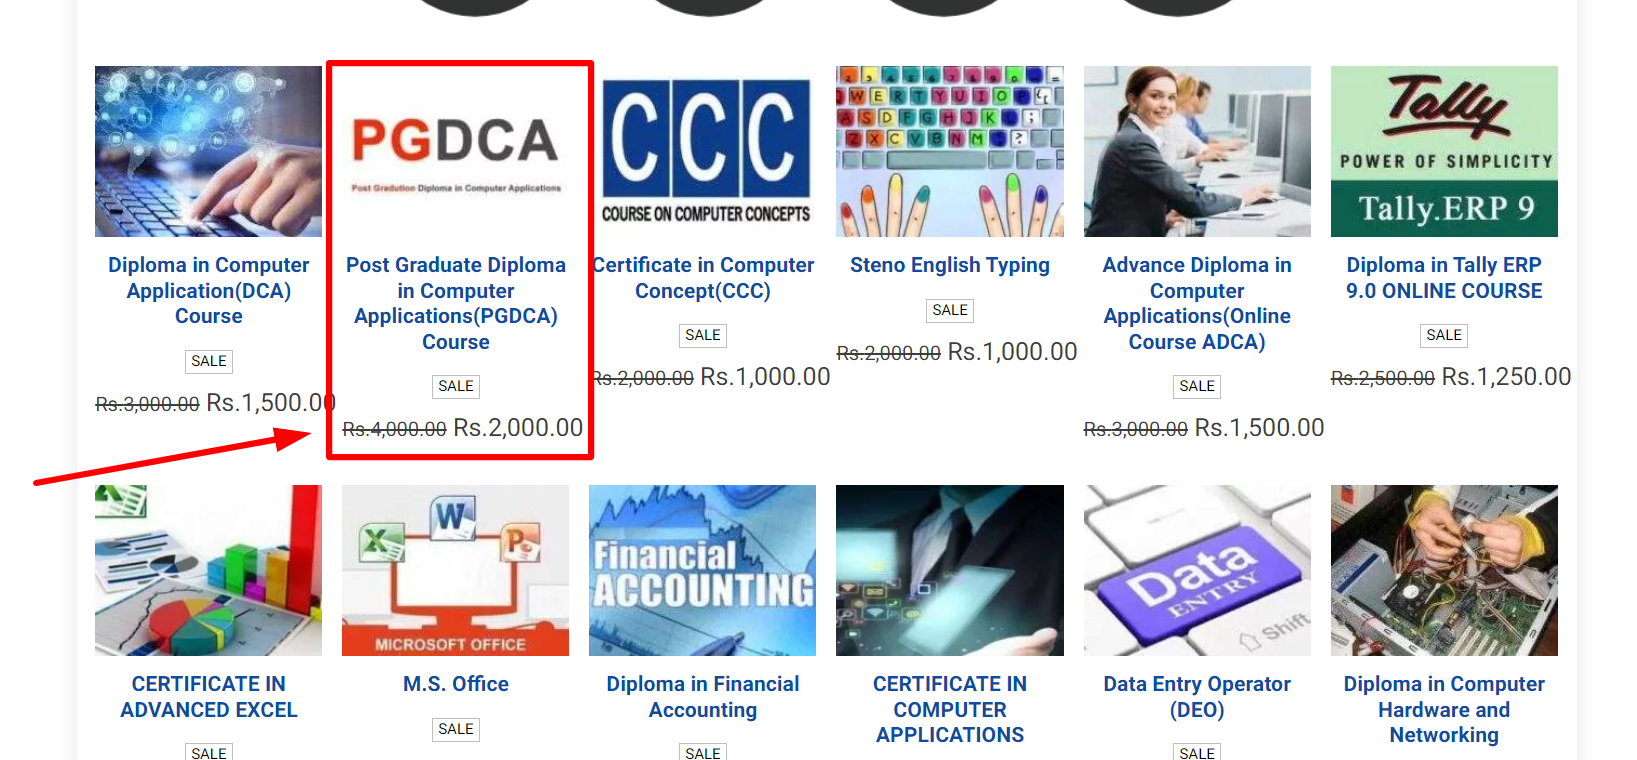 PGDCA course enroll online